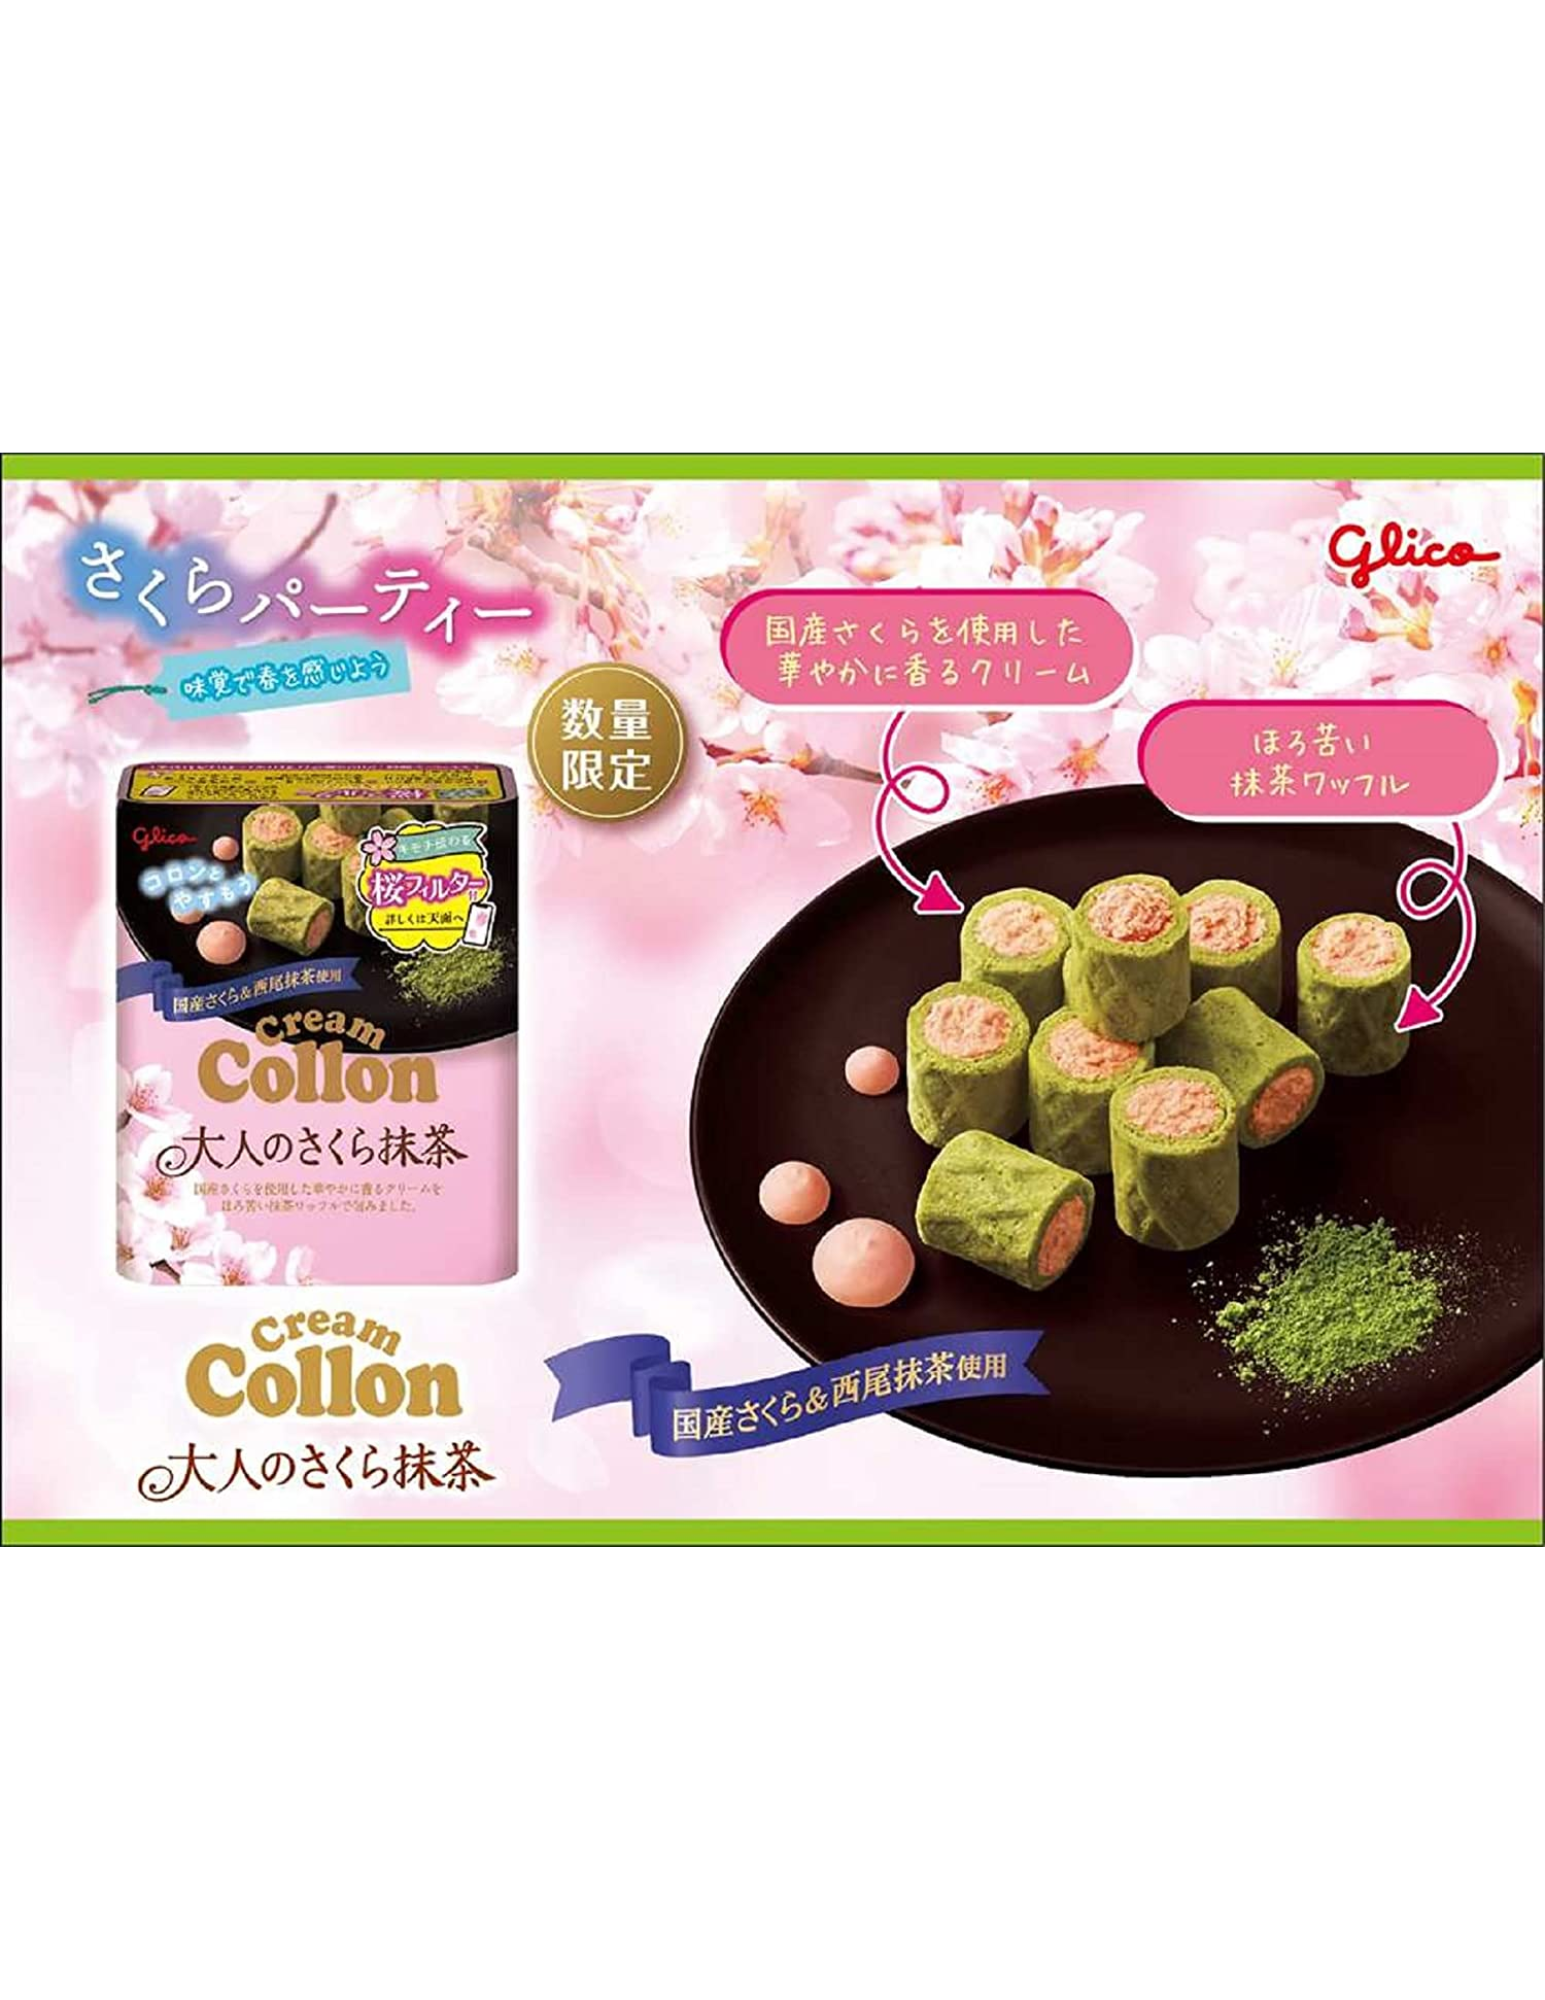 Glico Cream Colon Sakura Matcha